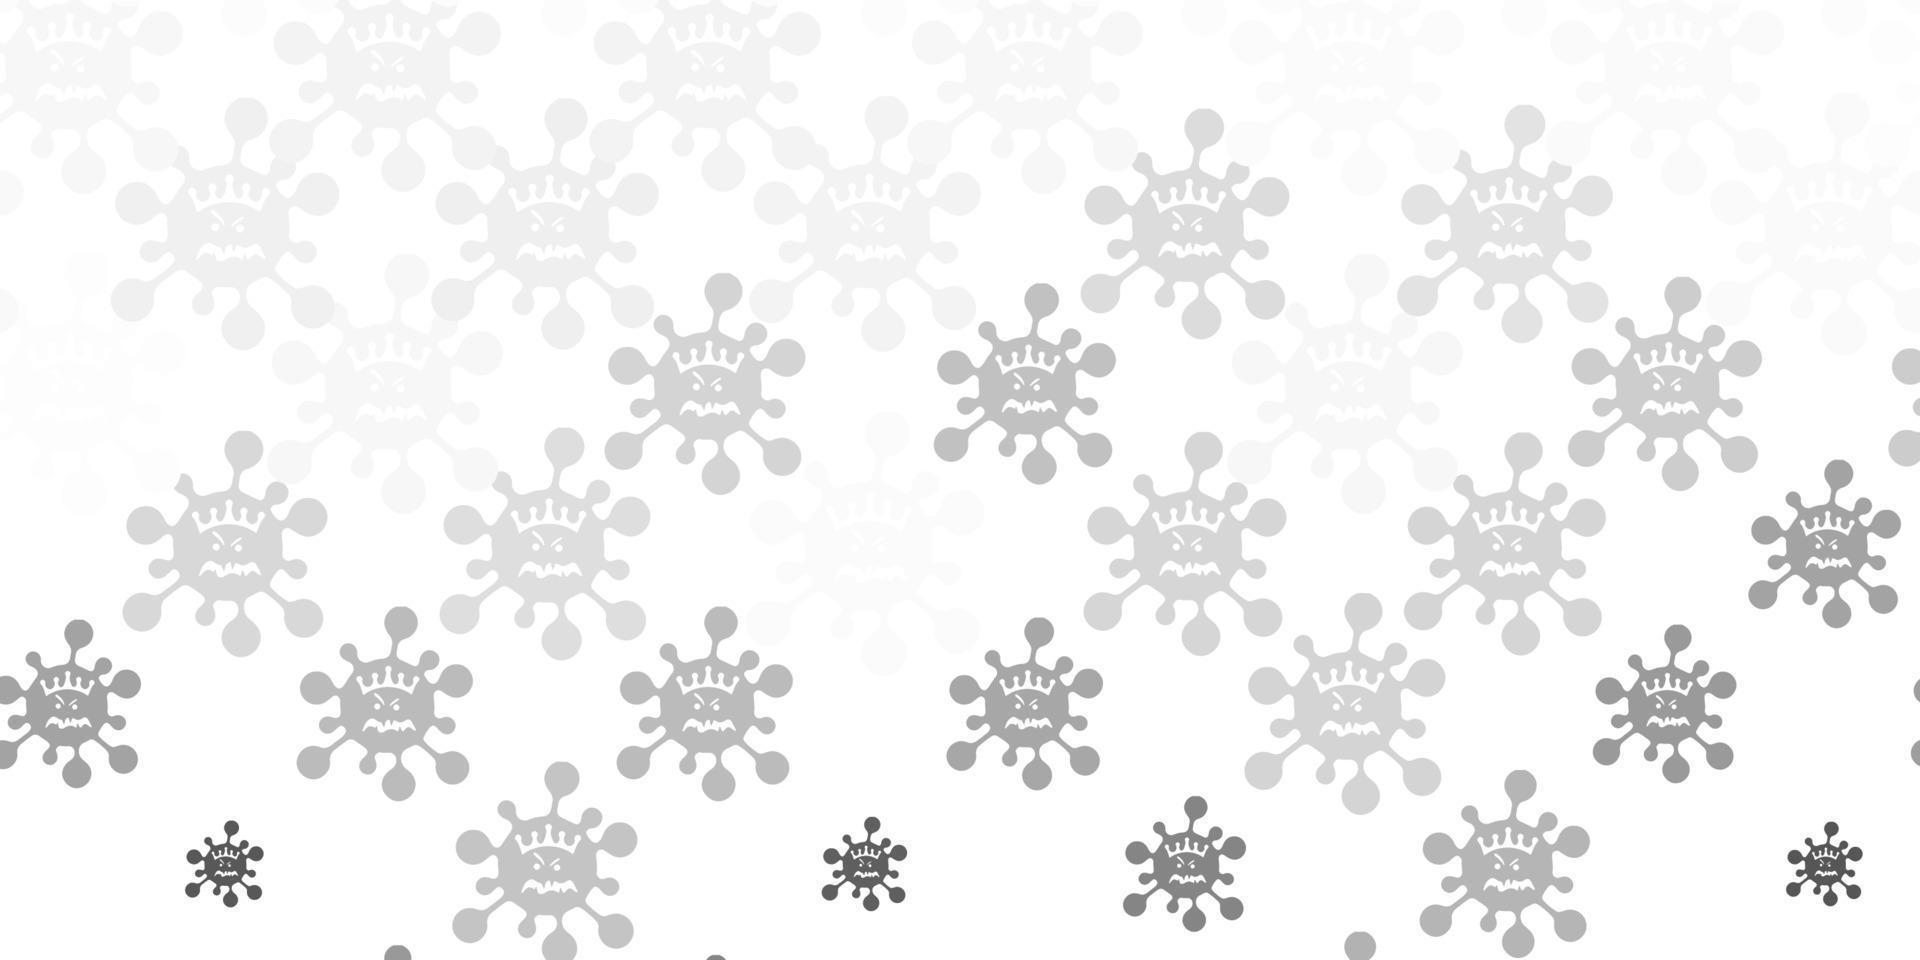 toile de fond de vecteur gris clair avec symboles de virus.